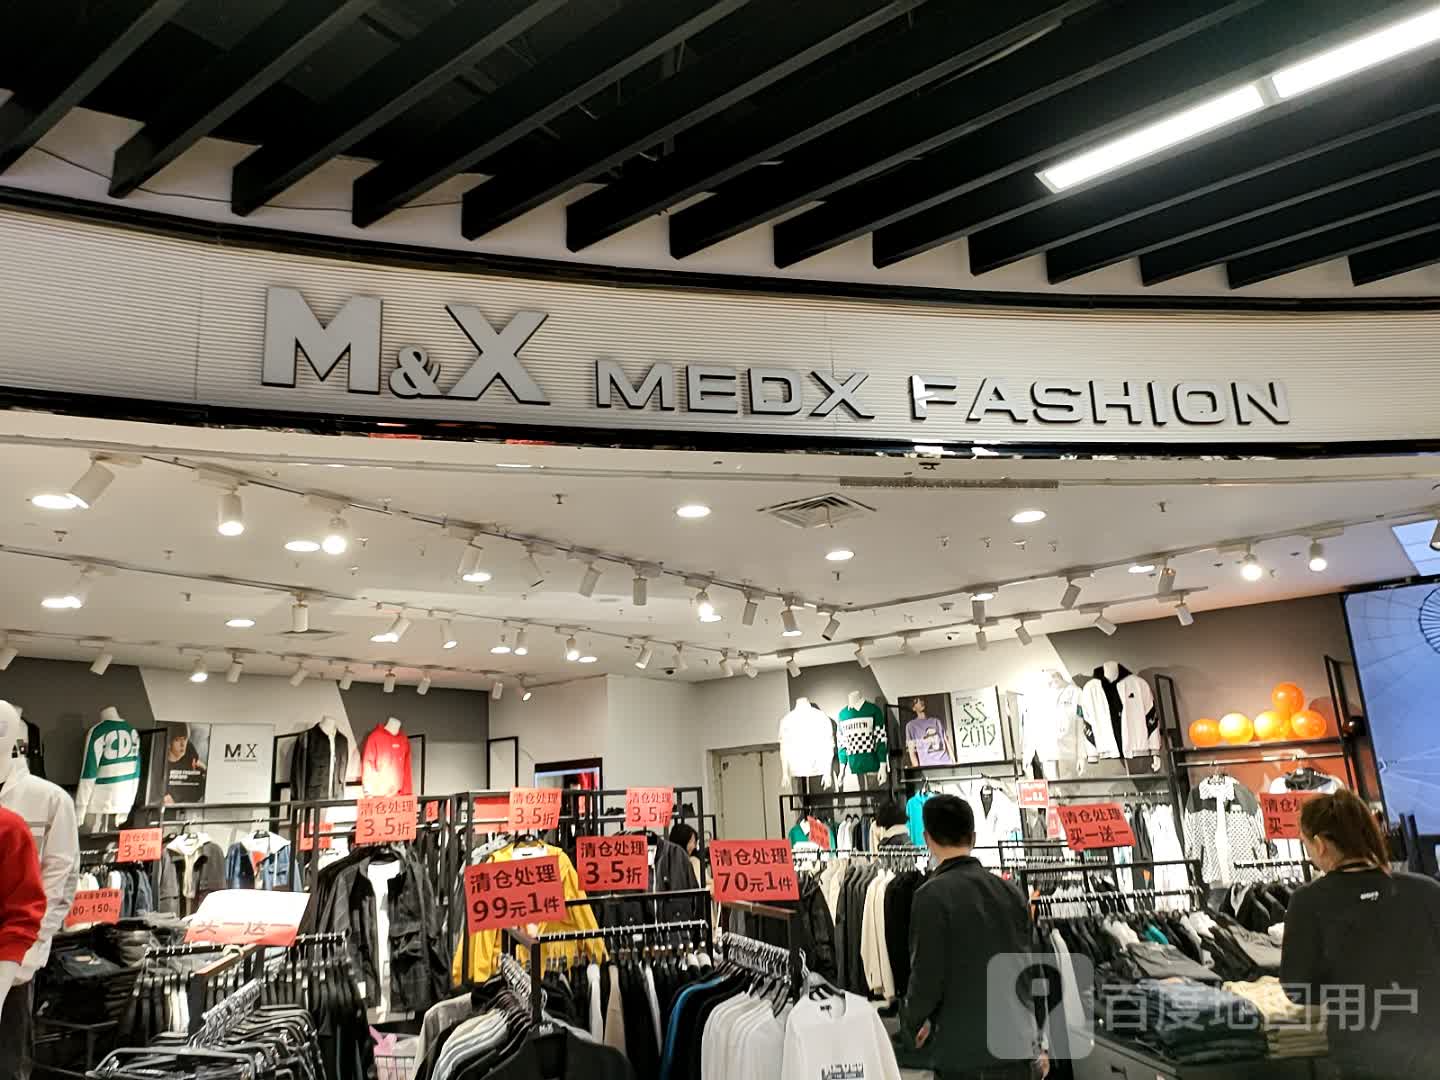 M&X MEDX FASHION(仙林大道万达茂店)